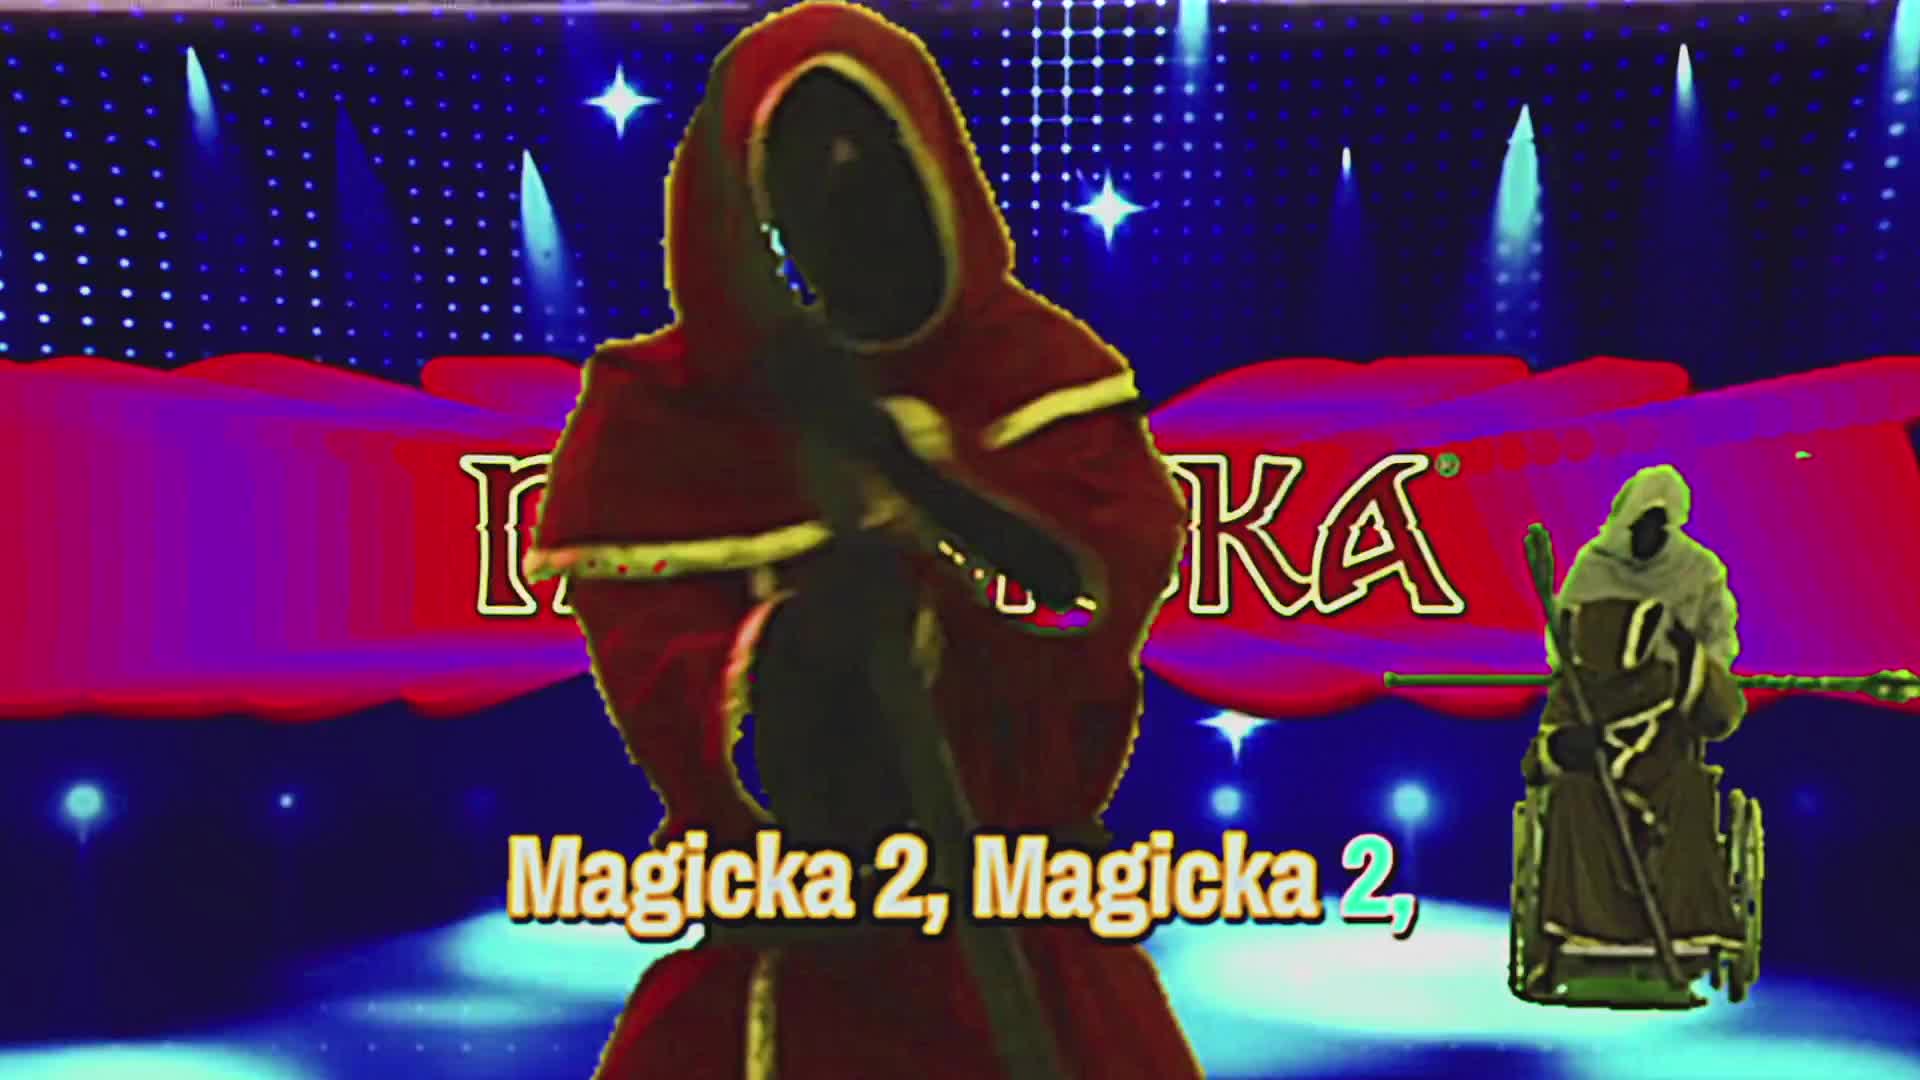 Magicka 2 - Karaoke Singalong Trailer